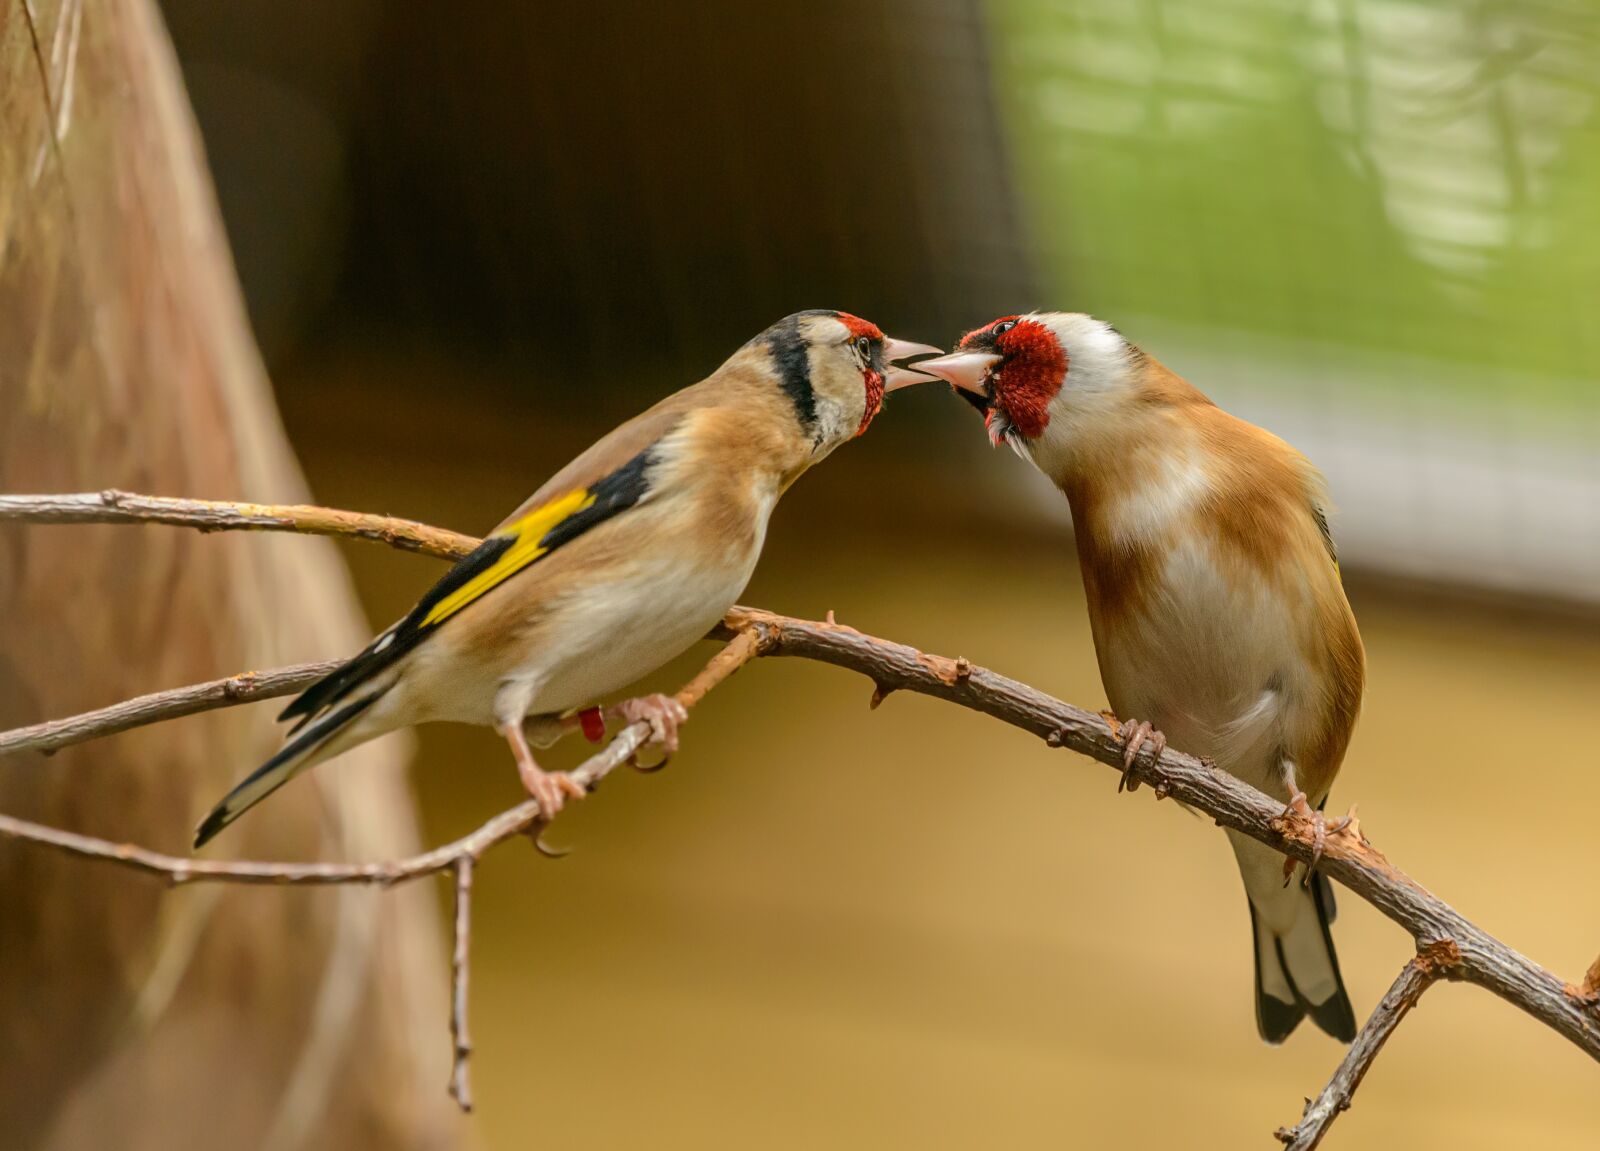 Nikon D800E sample photo. Goldfinch, bird, feeding photography